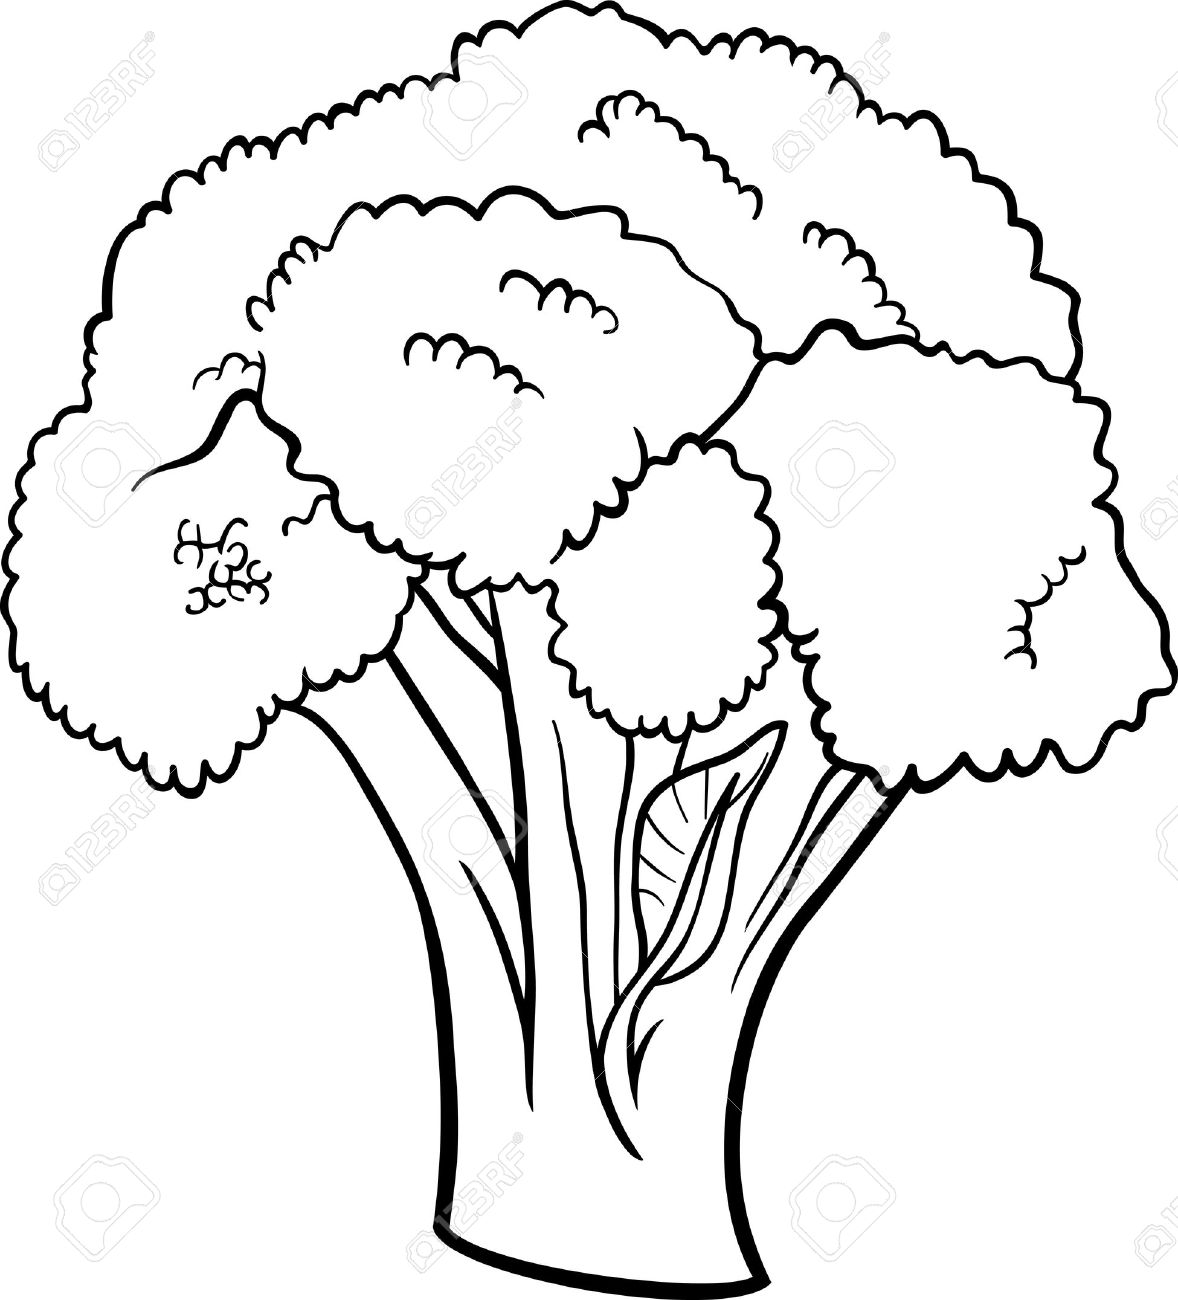 Broccoli clipart black and white